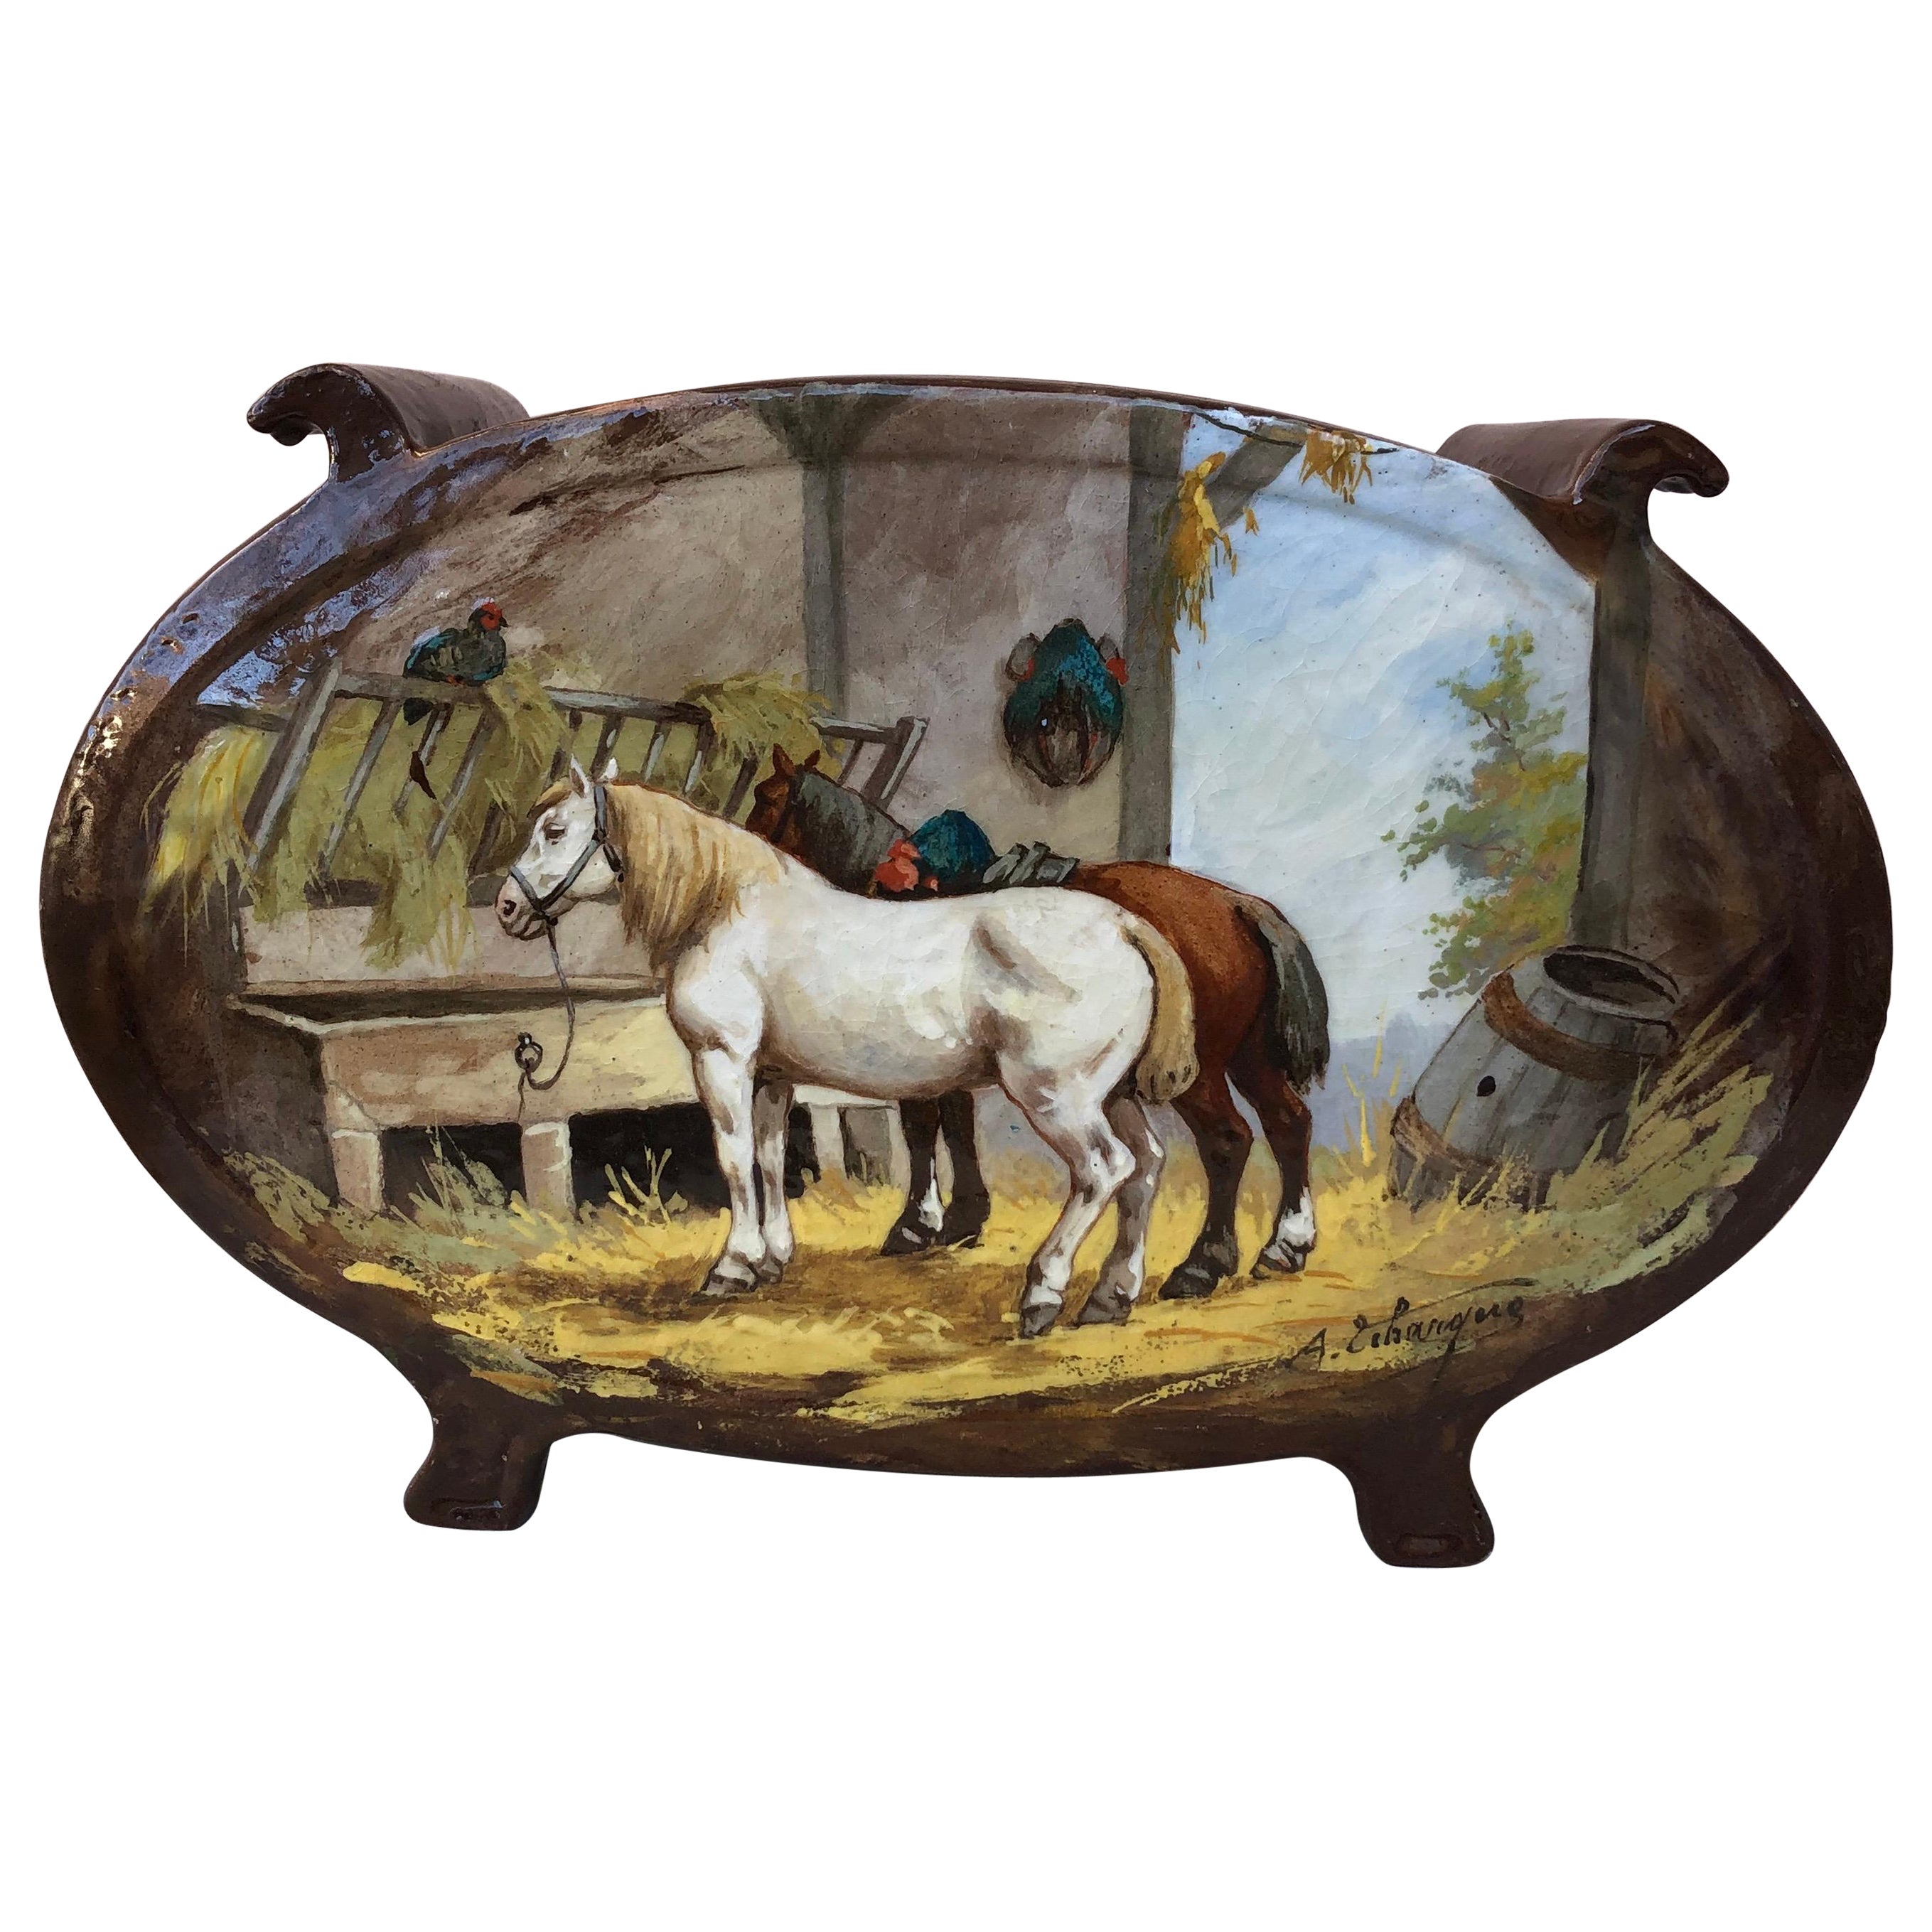 Grande jardinière française du 19e siècle avec chevaux et grange Albert Lebarque